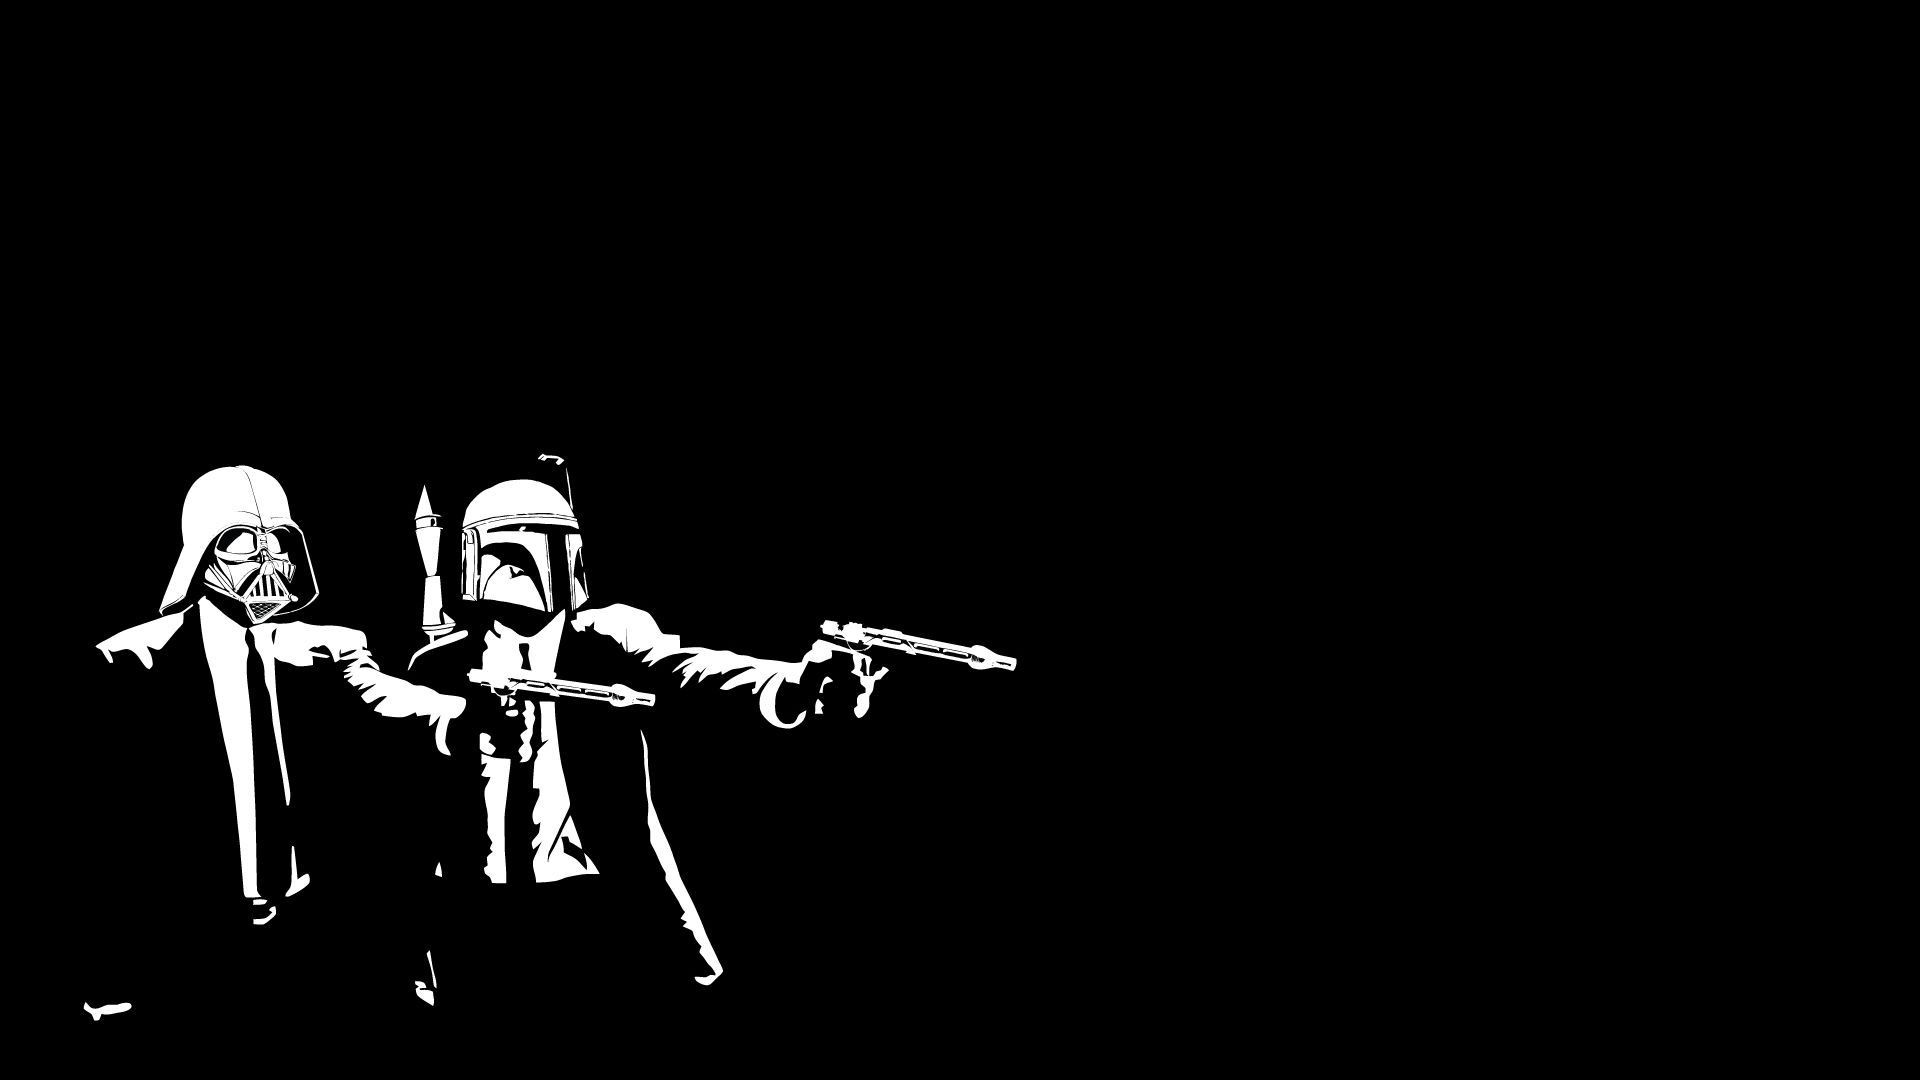 Star Wars Darth Vader Boba Fett The Boondock Saints wallpaper background